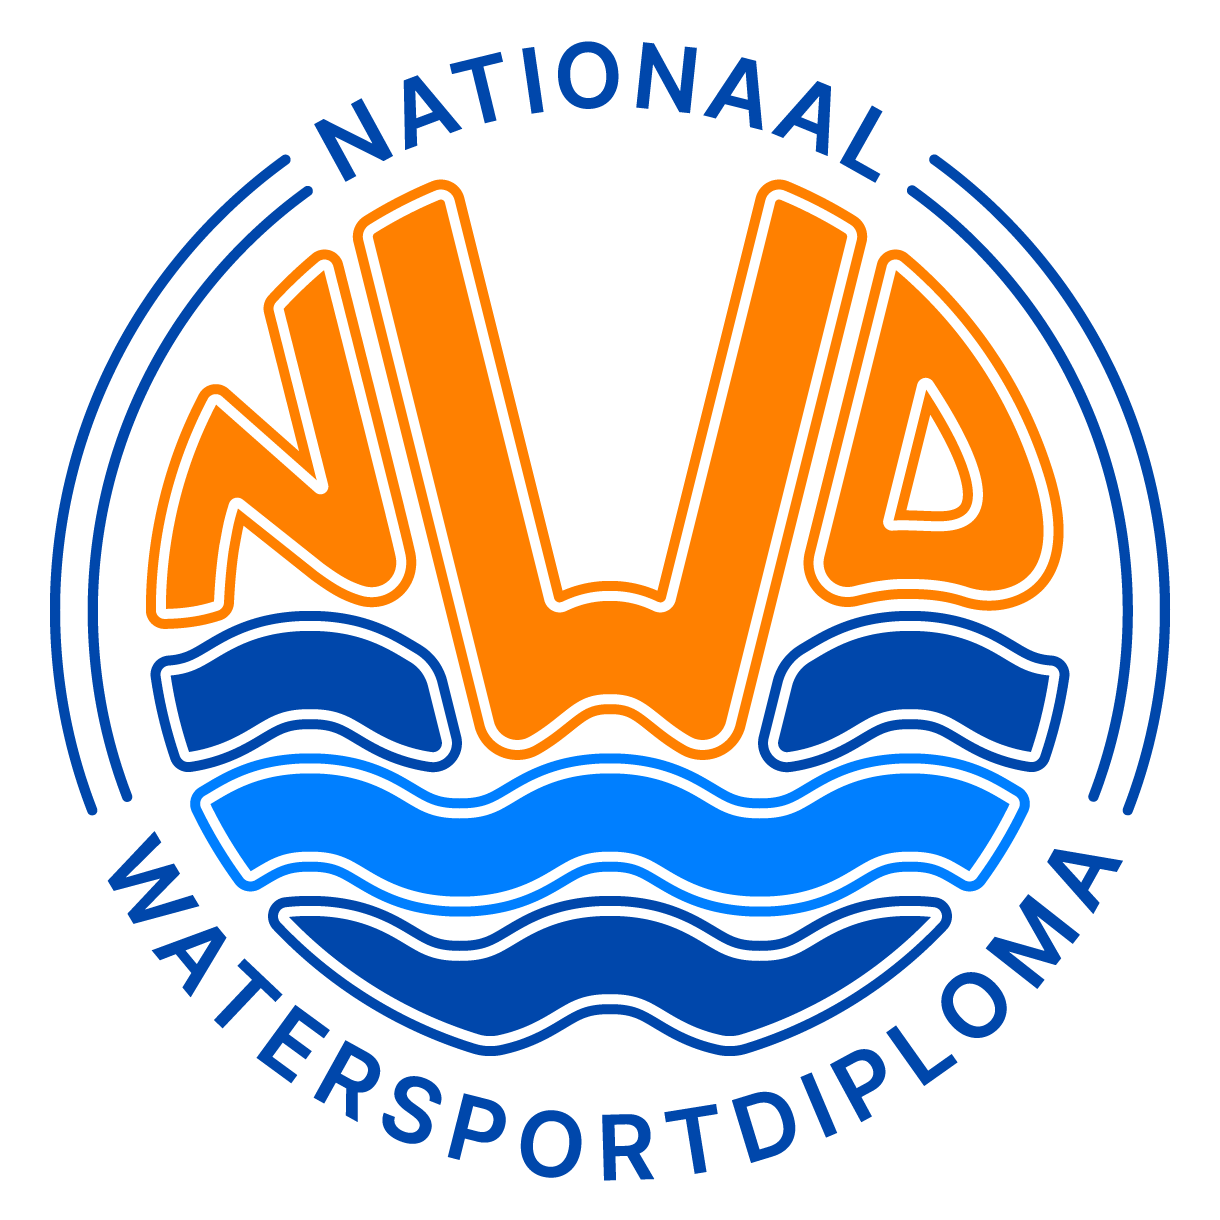 Wij hebben nieuws: vanaf dit vaarseizoen kiezen wij voor het Nationaal Watersportdiploma (NWD)!